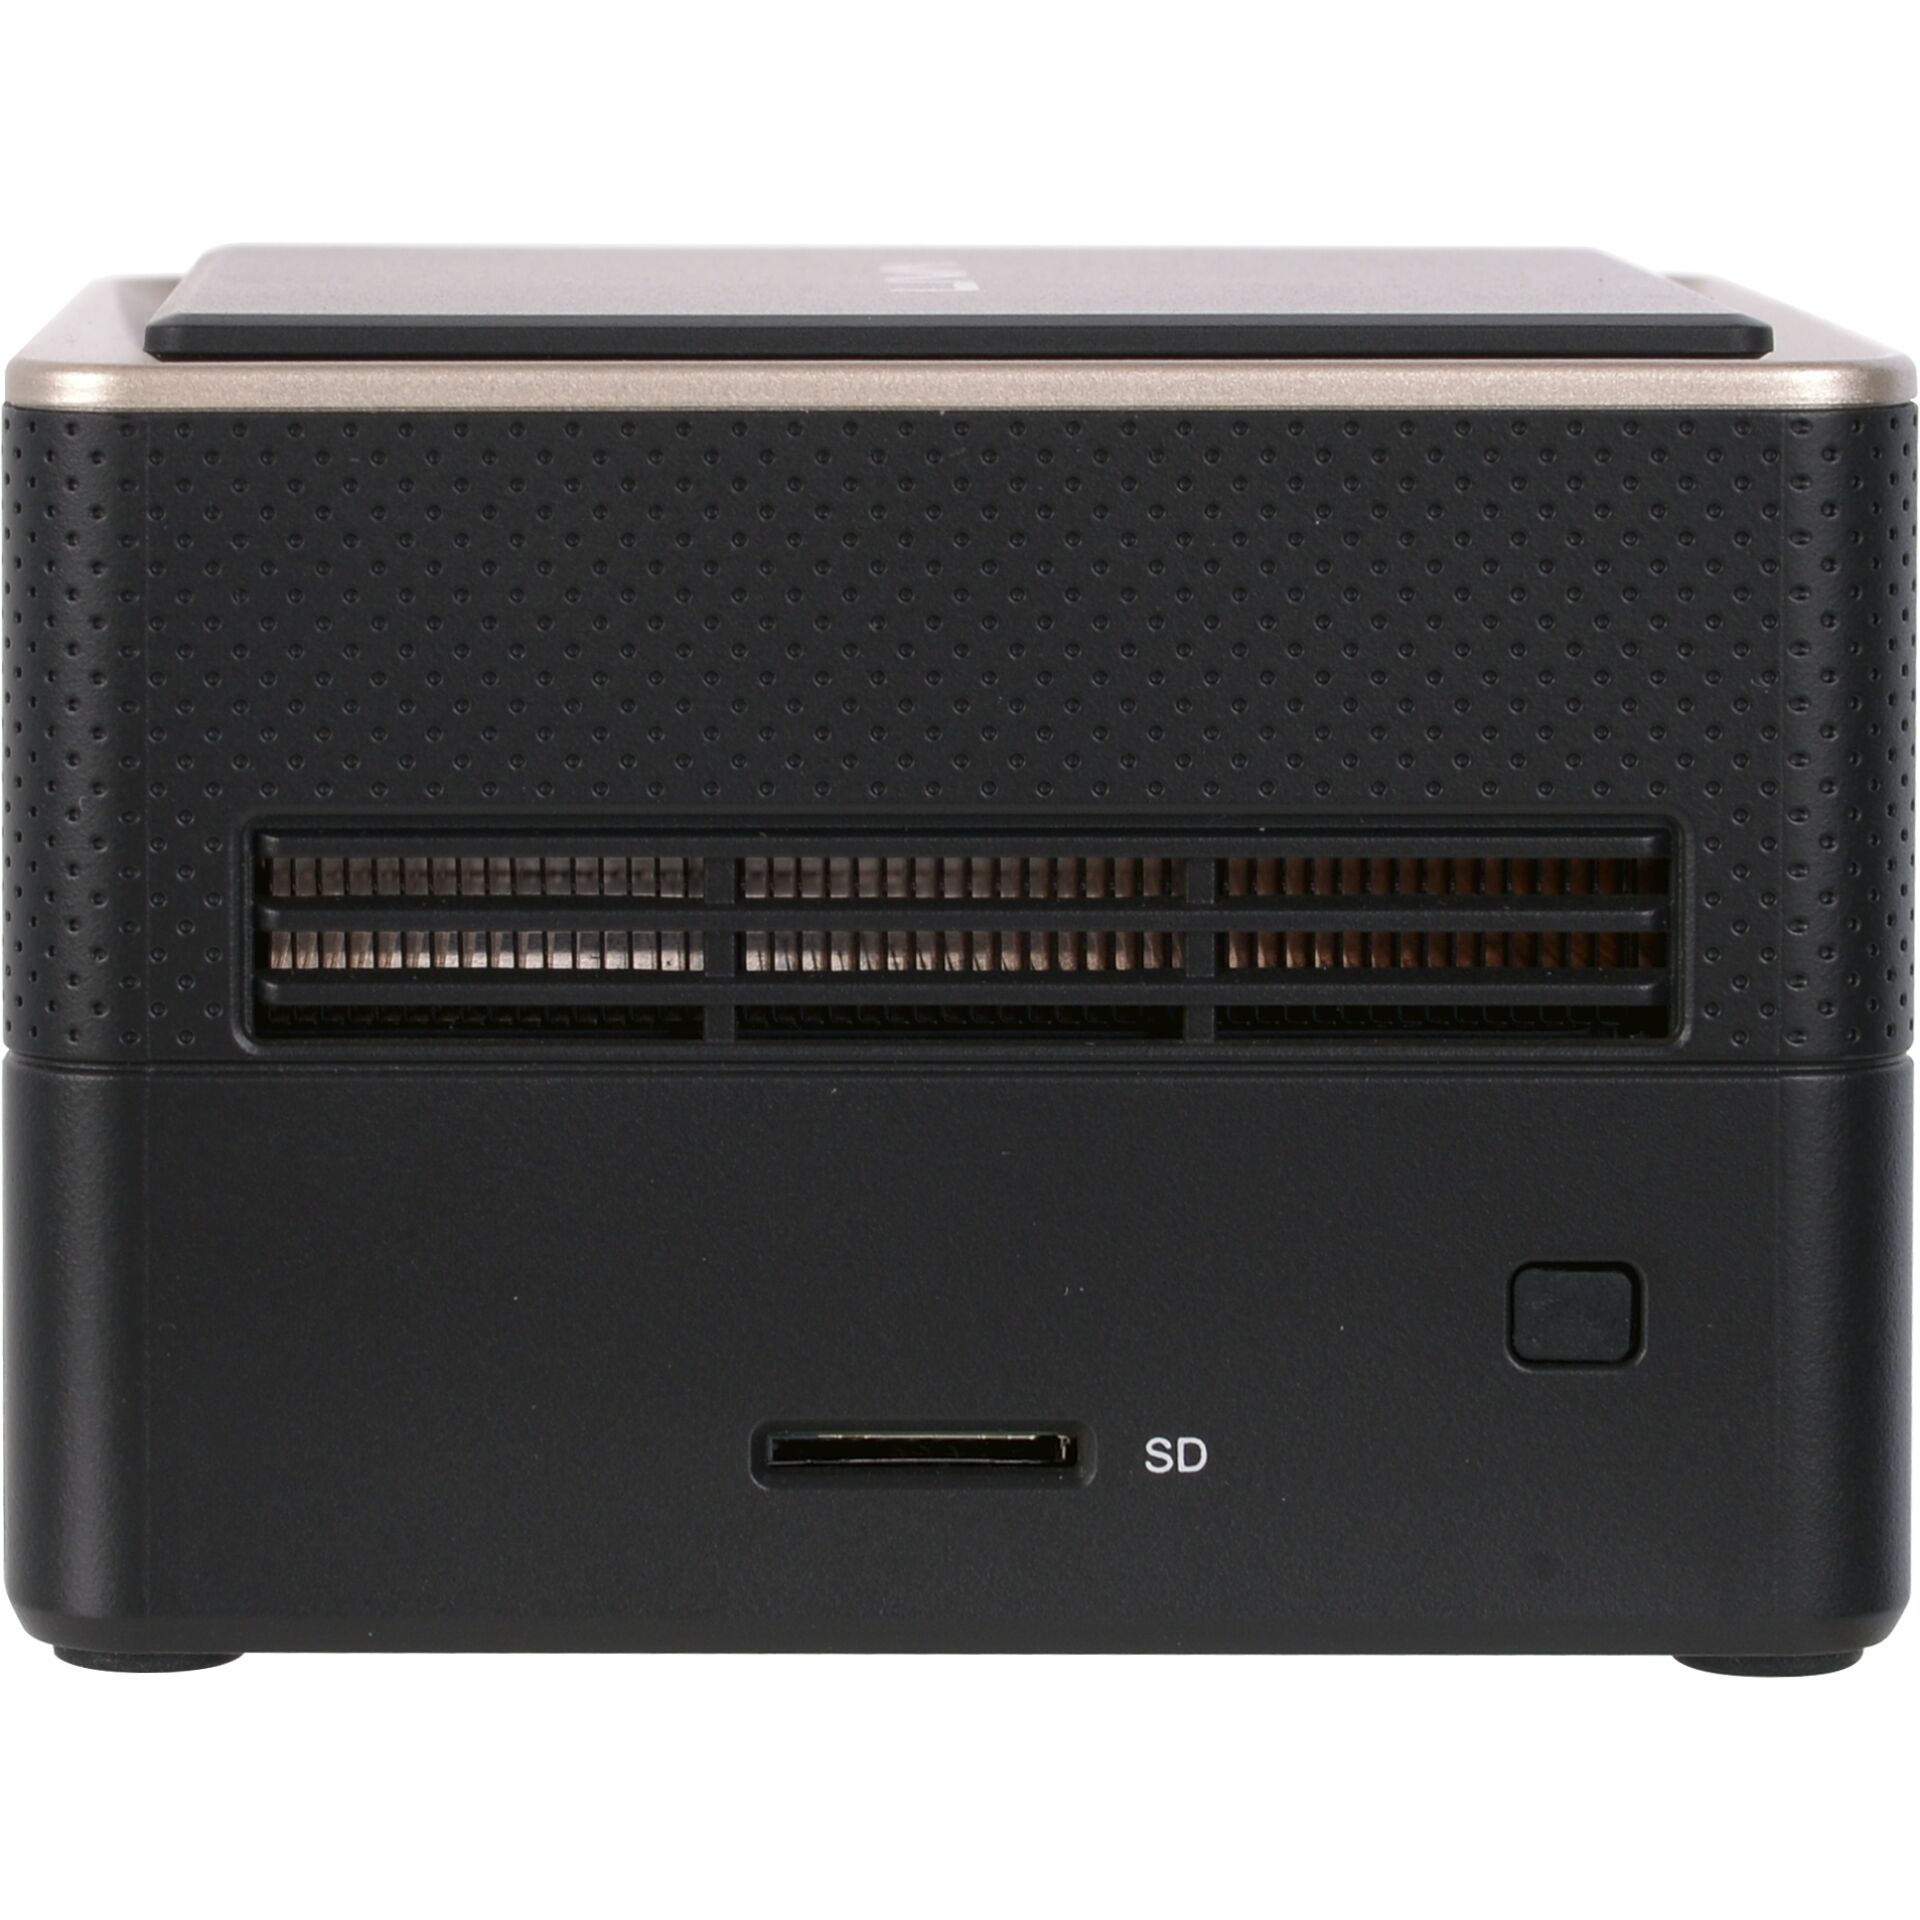 ECS ELITE GROUP LIVA Q3 Schwarz AMD Plus PCs, V1605 Mini